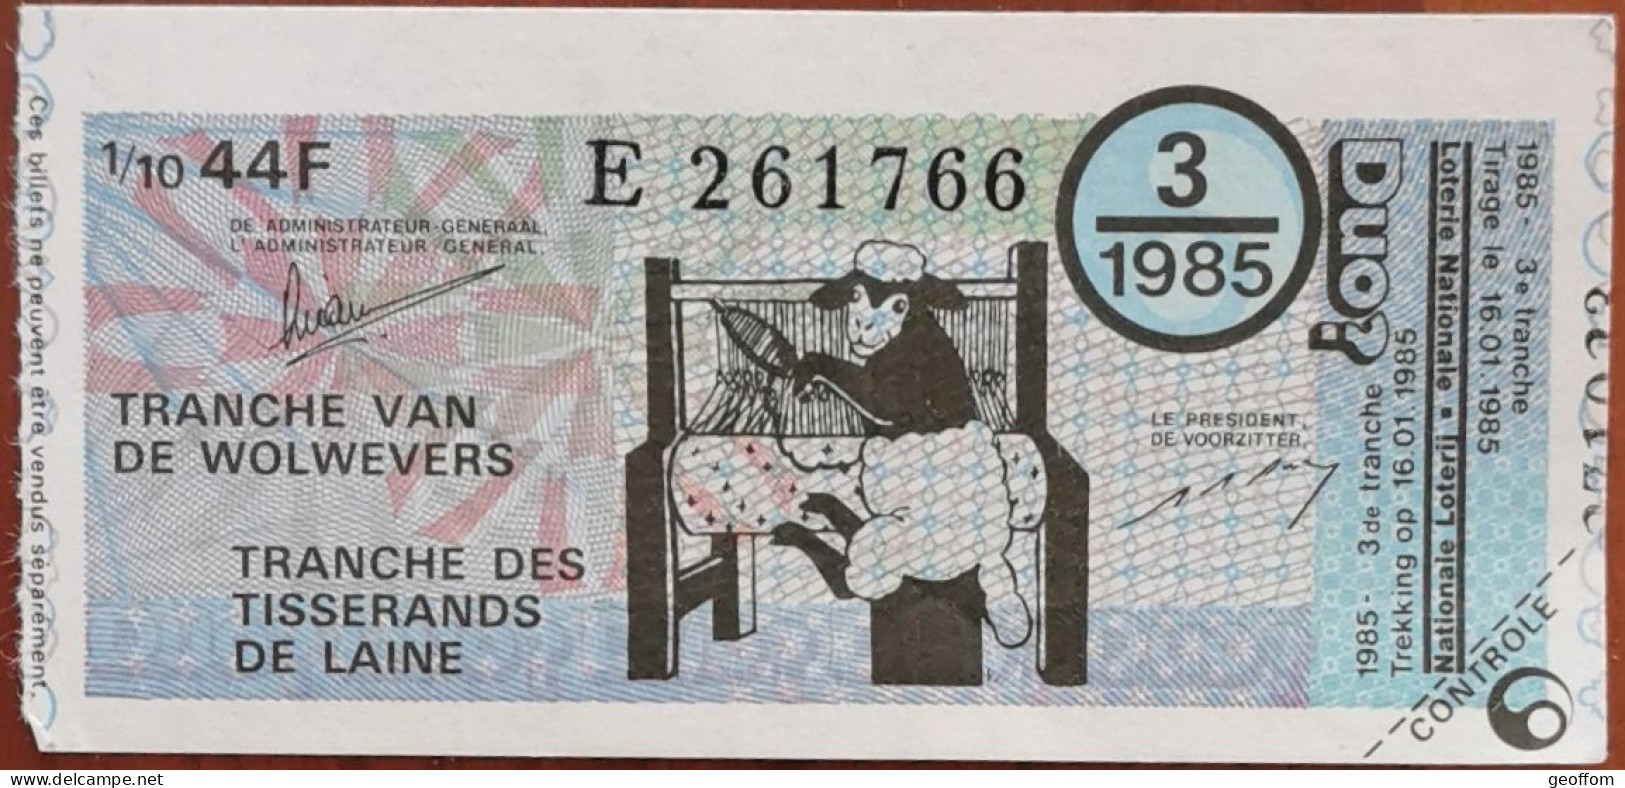 Billet De Loterie Nationale Belgique 1985 3e Tranche Des Tisserands De Laine - 16-1-1985 - Billetes De Lotería